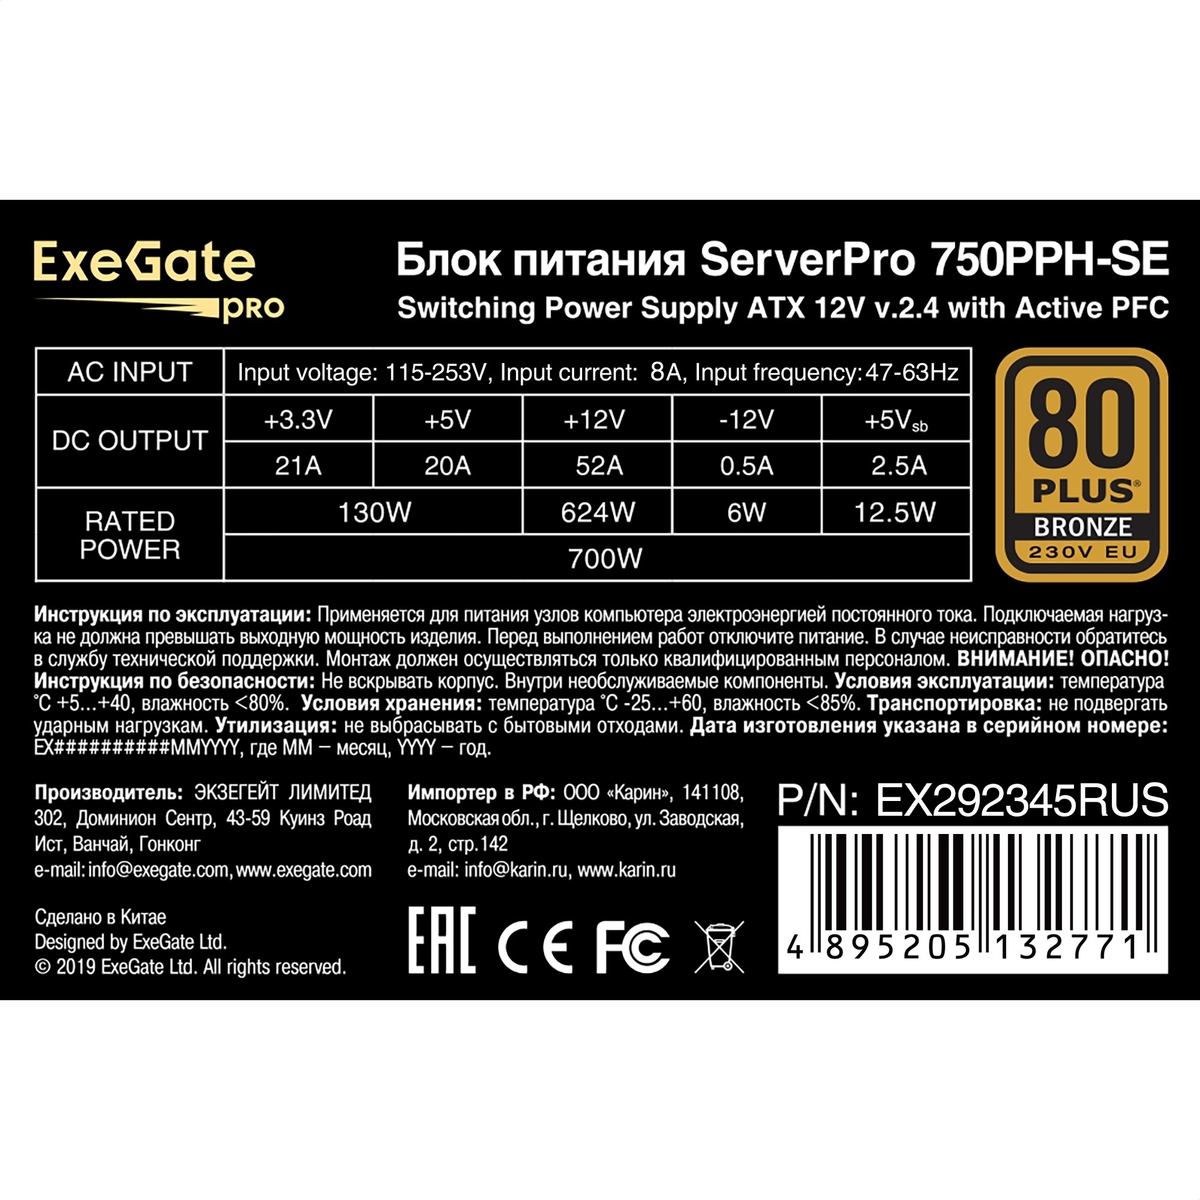   750W ExeGate ServerPRO 80 PLUS<sup></sup> Bronze 750PPH-SE